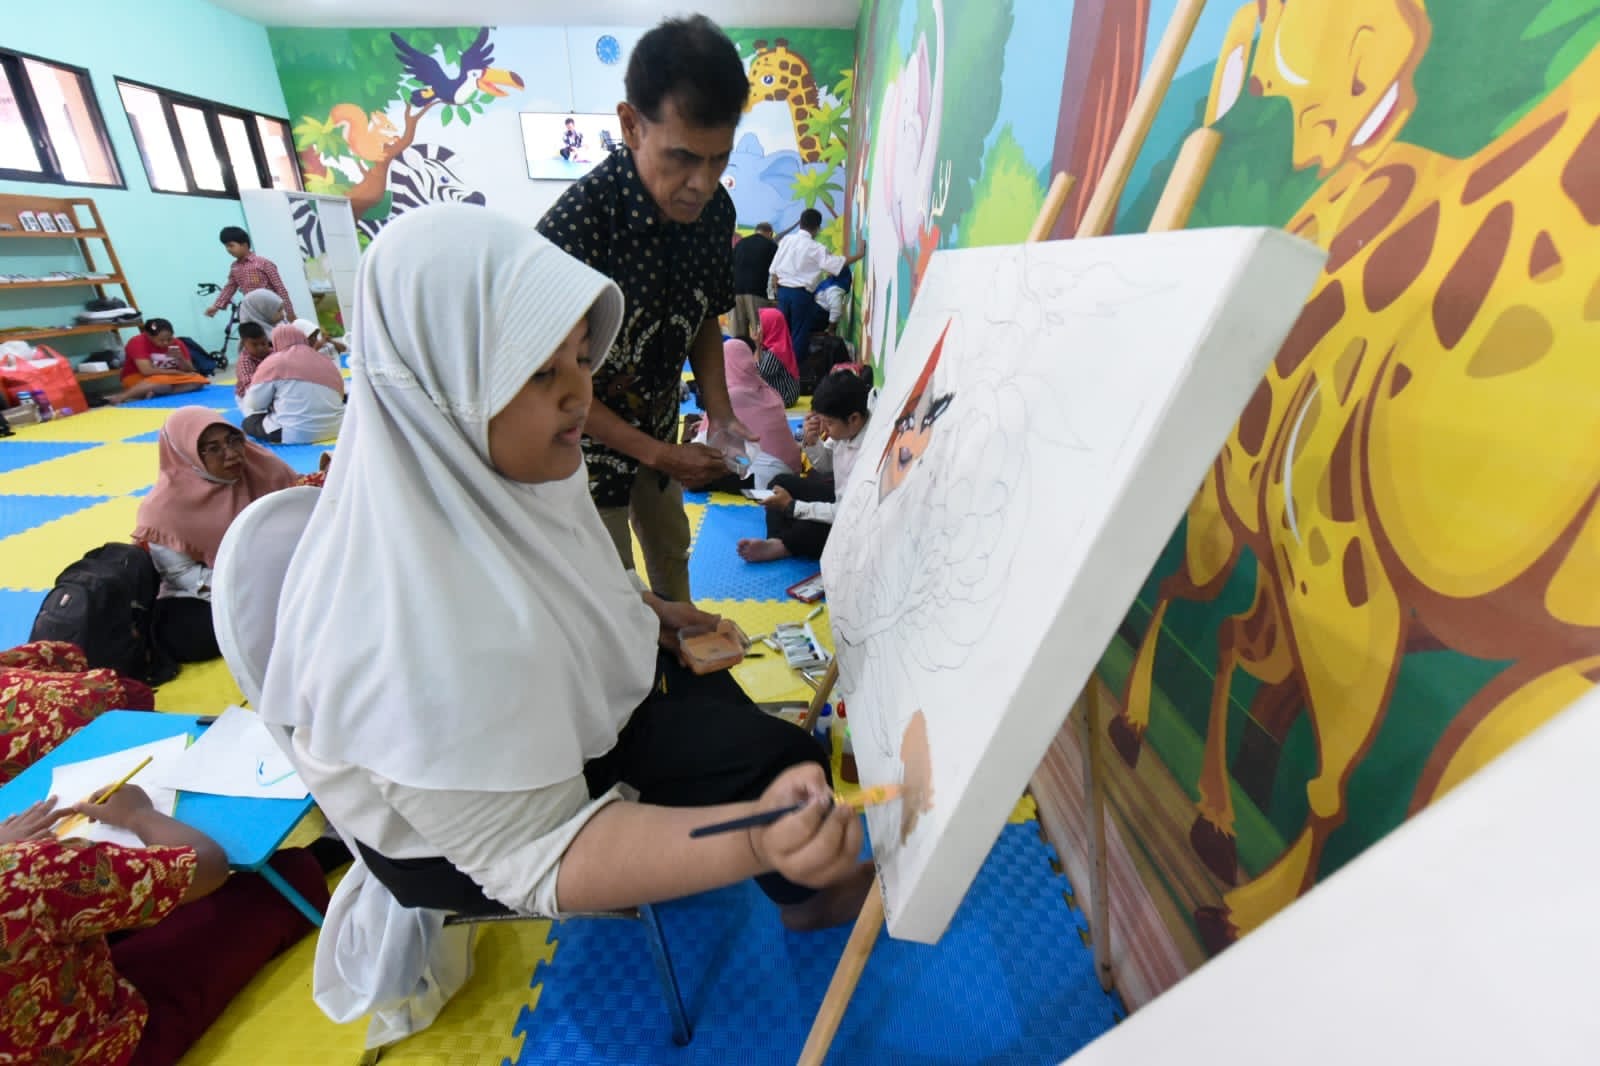 Rumah Anak Prestasi Surabaya Bisa Dimanfaatkan Anak-Anak Disabilitas Untuk Belajar dan Menjalani Terapi